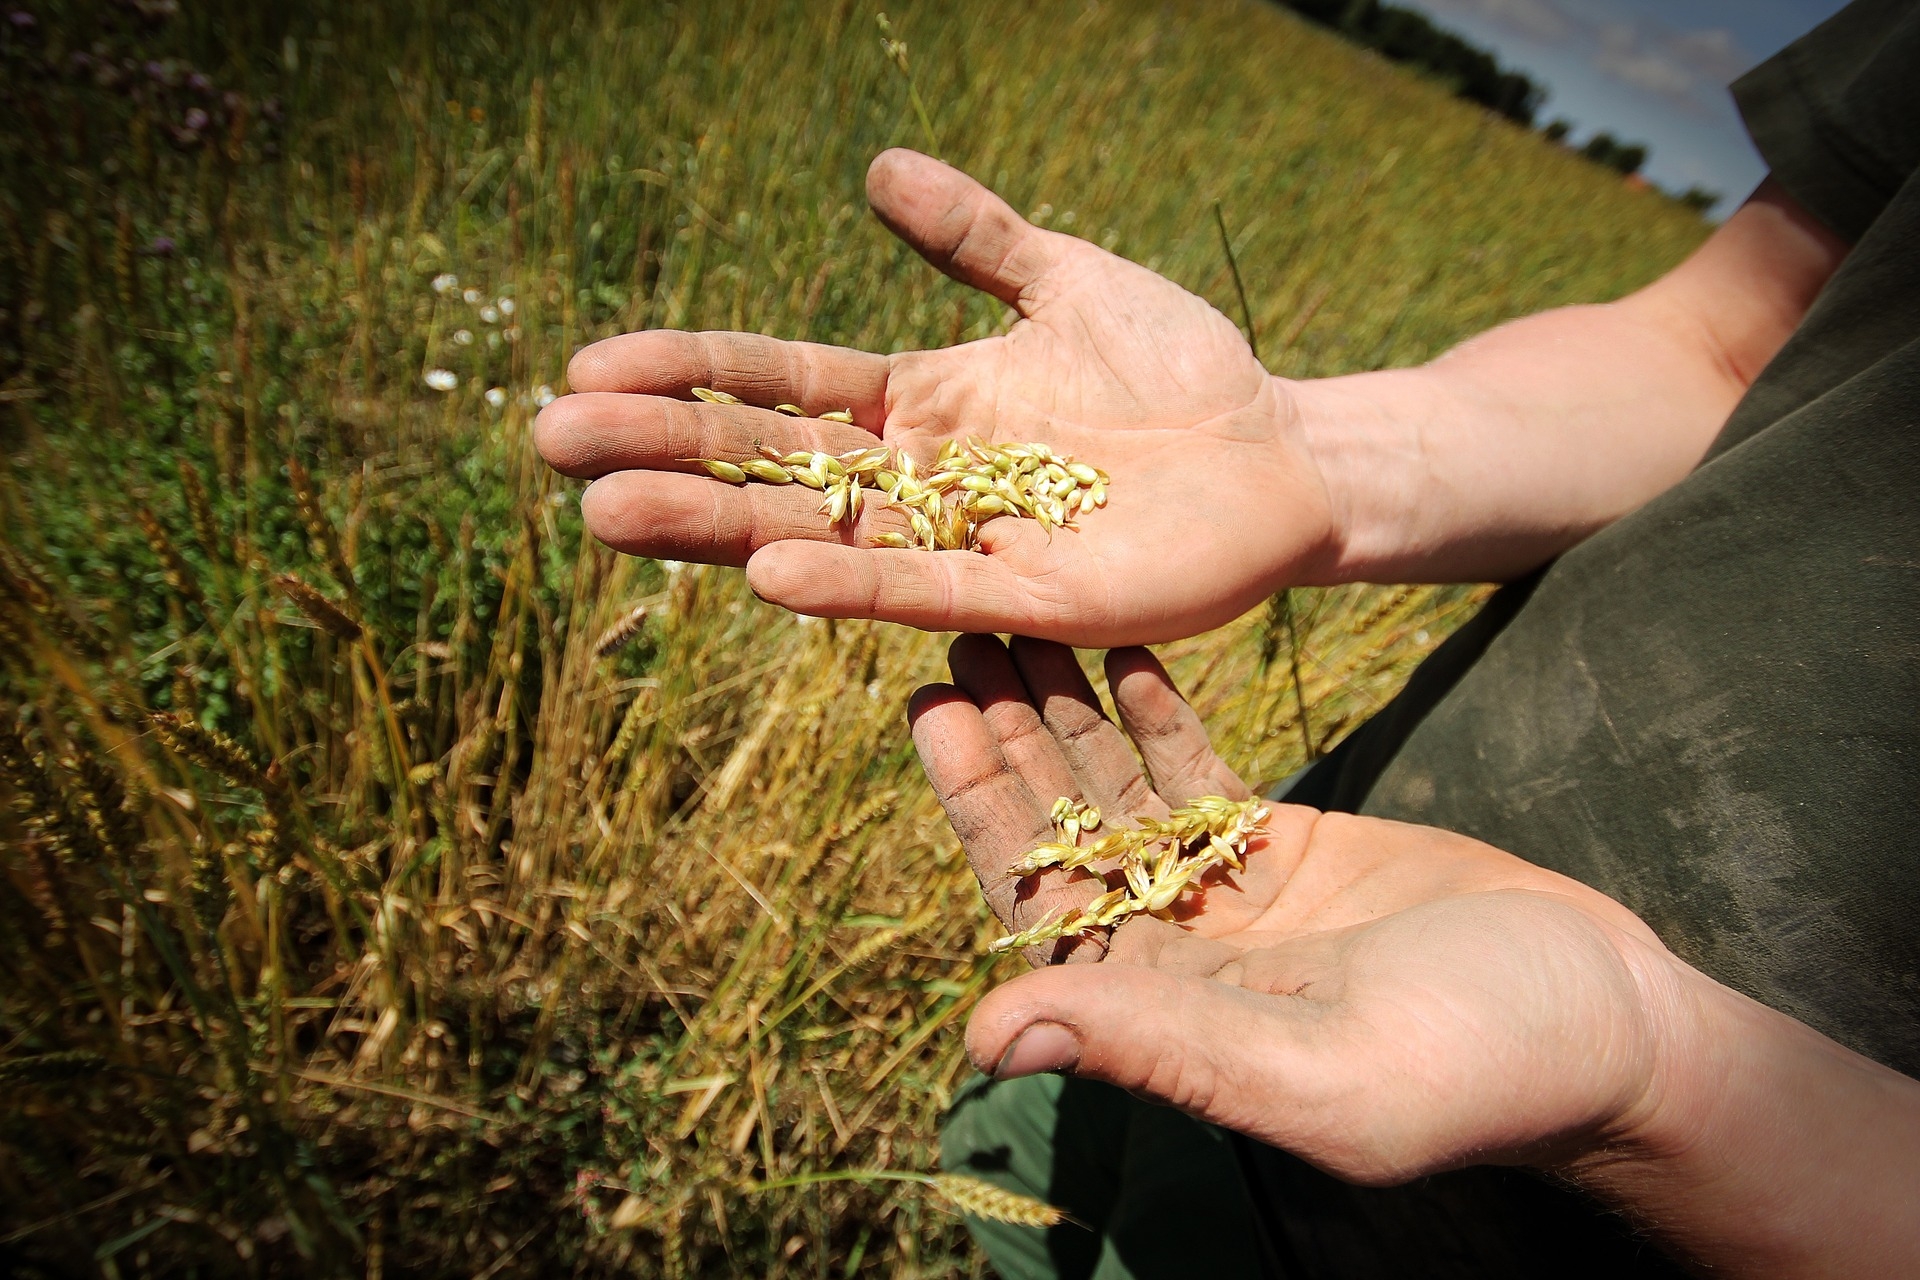 Das Symbolbild zeigt zwei wettergegerbte Hände,  in deren Innenflächen sich einige Getreidekörner befinden. Im Hintergrund sieht man ein Getreidefeld.